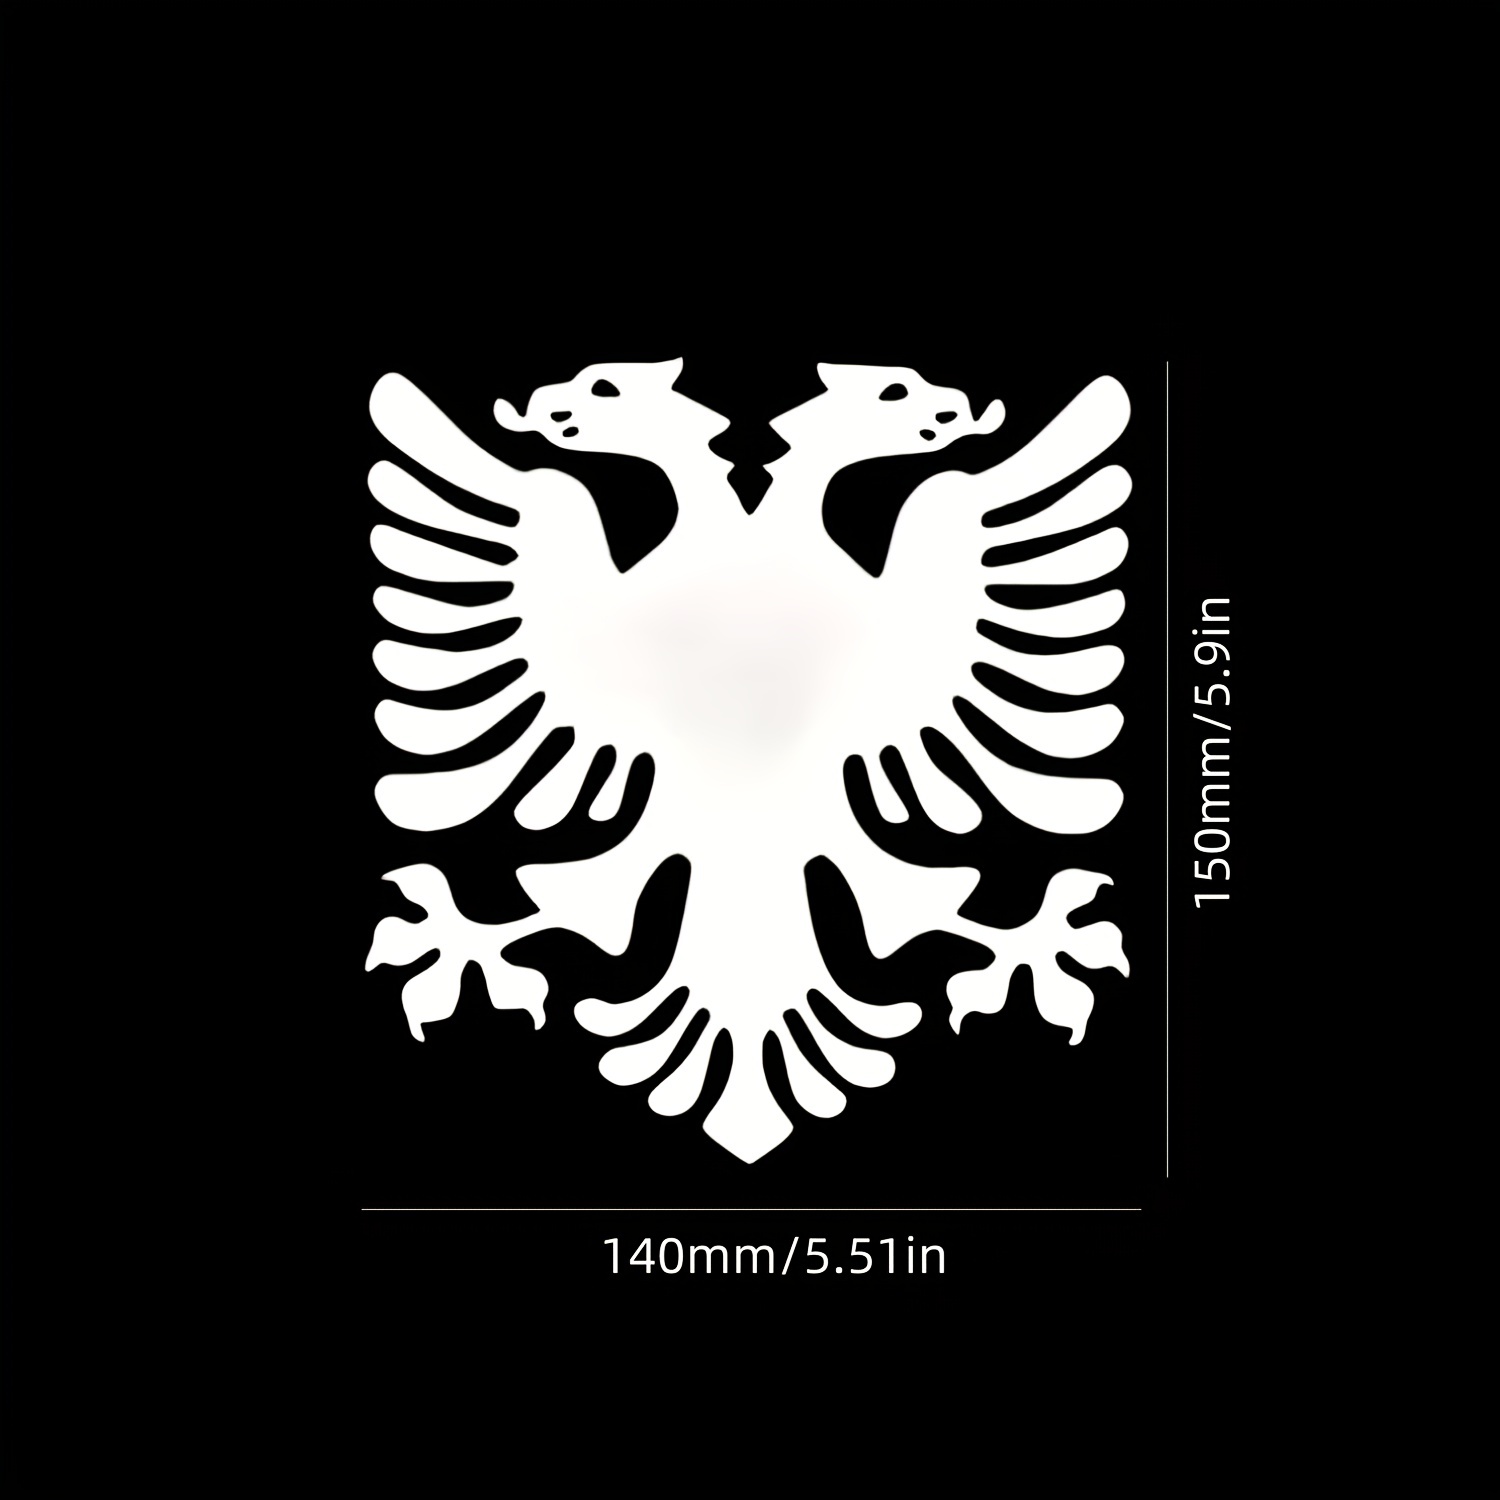 Albanien Adler Aufkleber Autoaufkleber Sticker 15cm x 10cm, Albanien, Länder & Städte, Designs